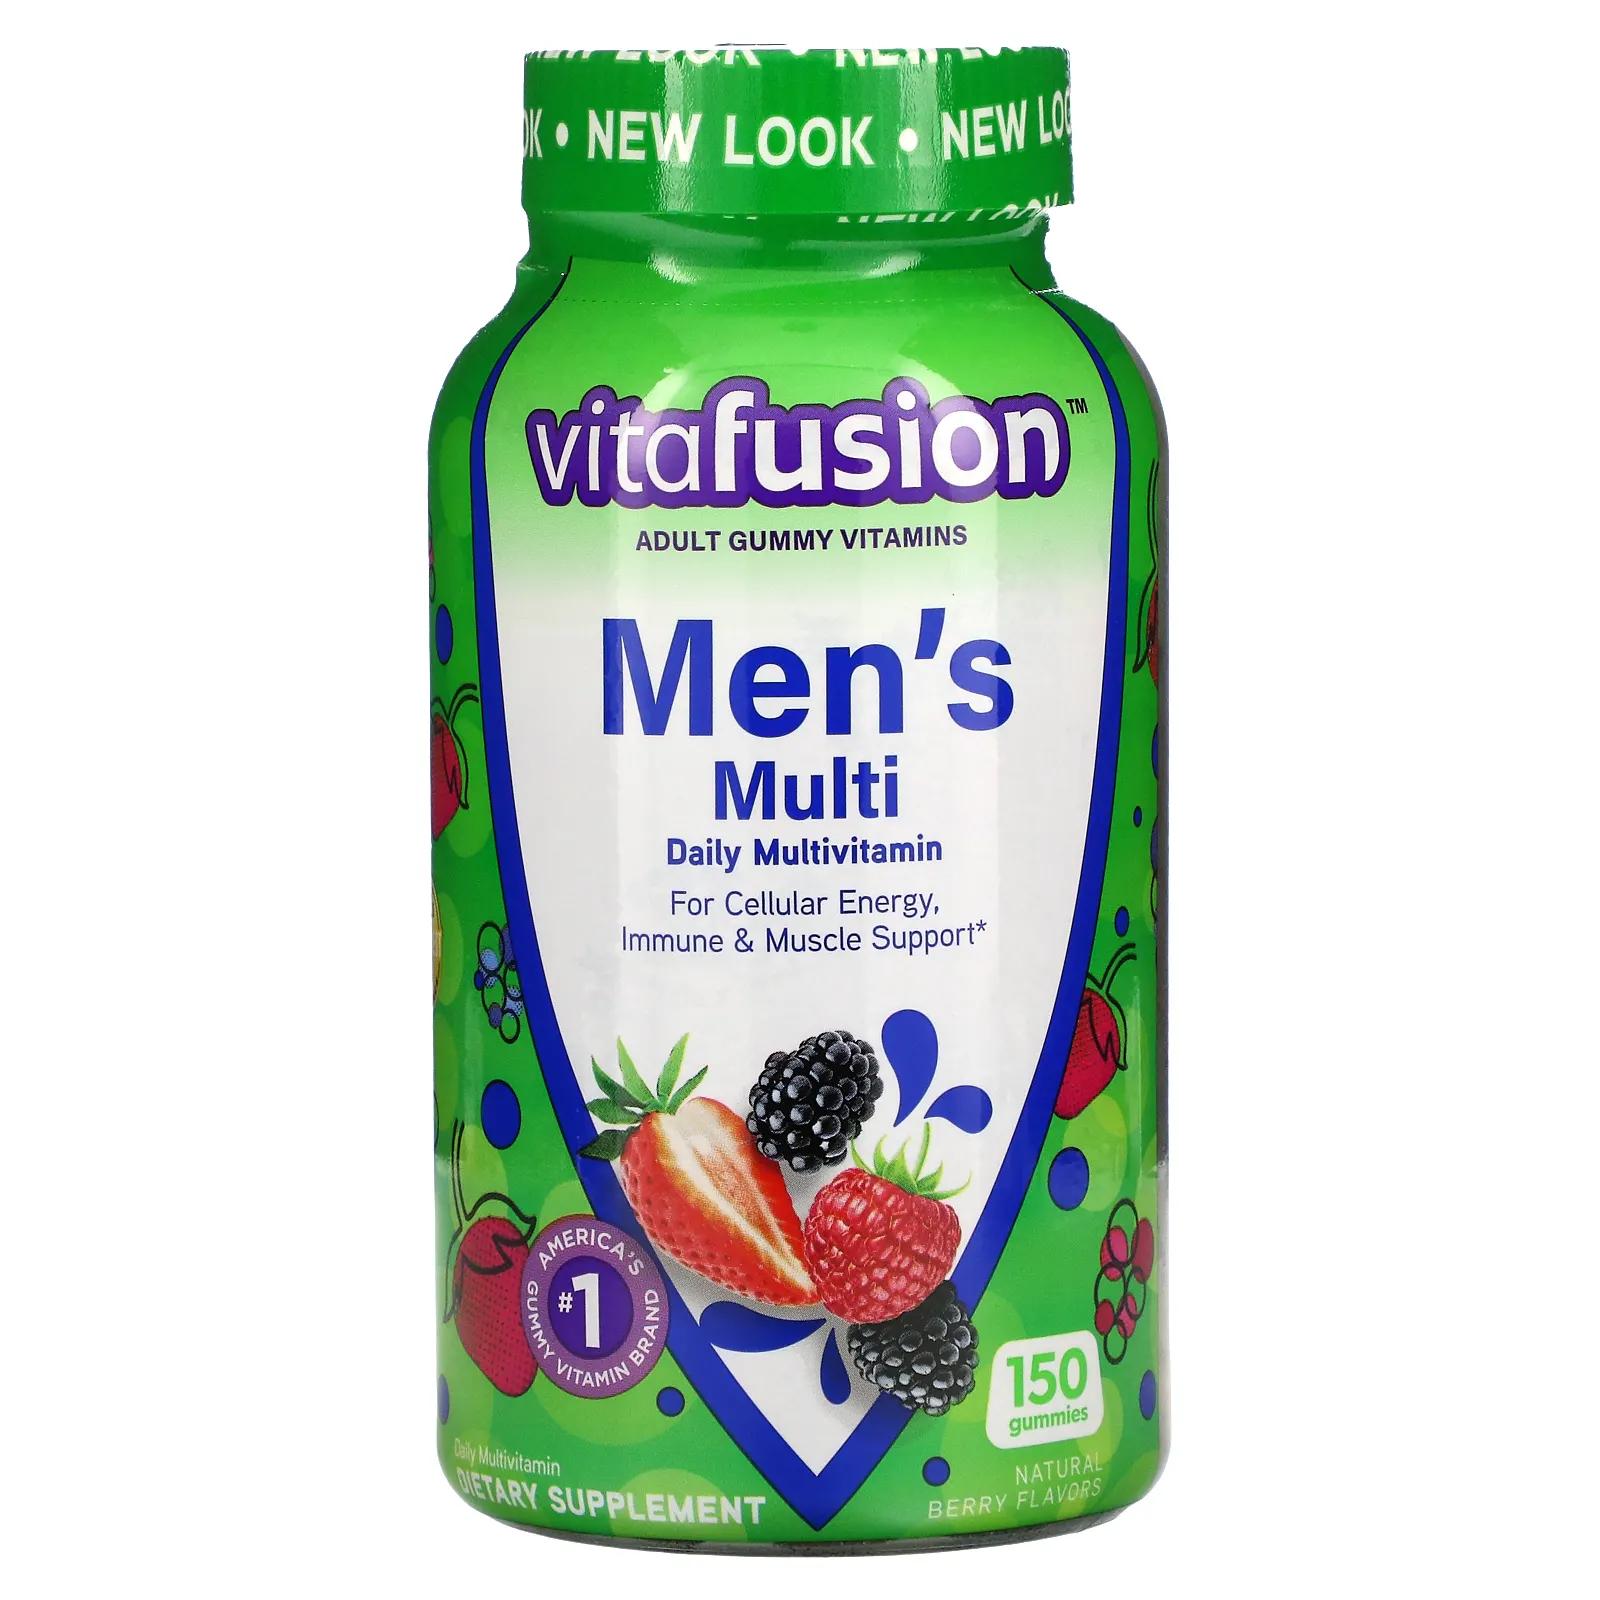 VitaFusion Комплексные мультивитамины для мужчин натуральные ягодные вкусы 150 жевательных таблеток vitafusion multivites незаменимые мультивитамины натуральный ягодный персиковый и апельсиновый вкусы 150